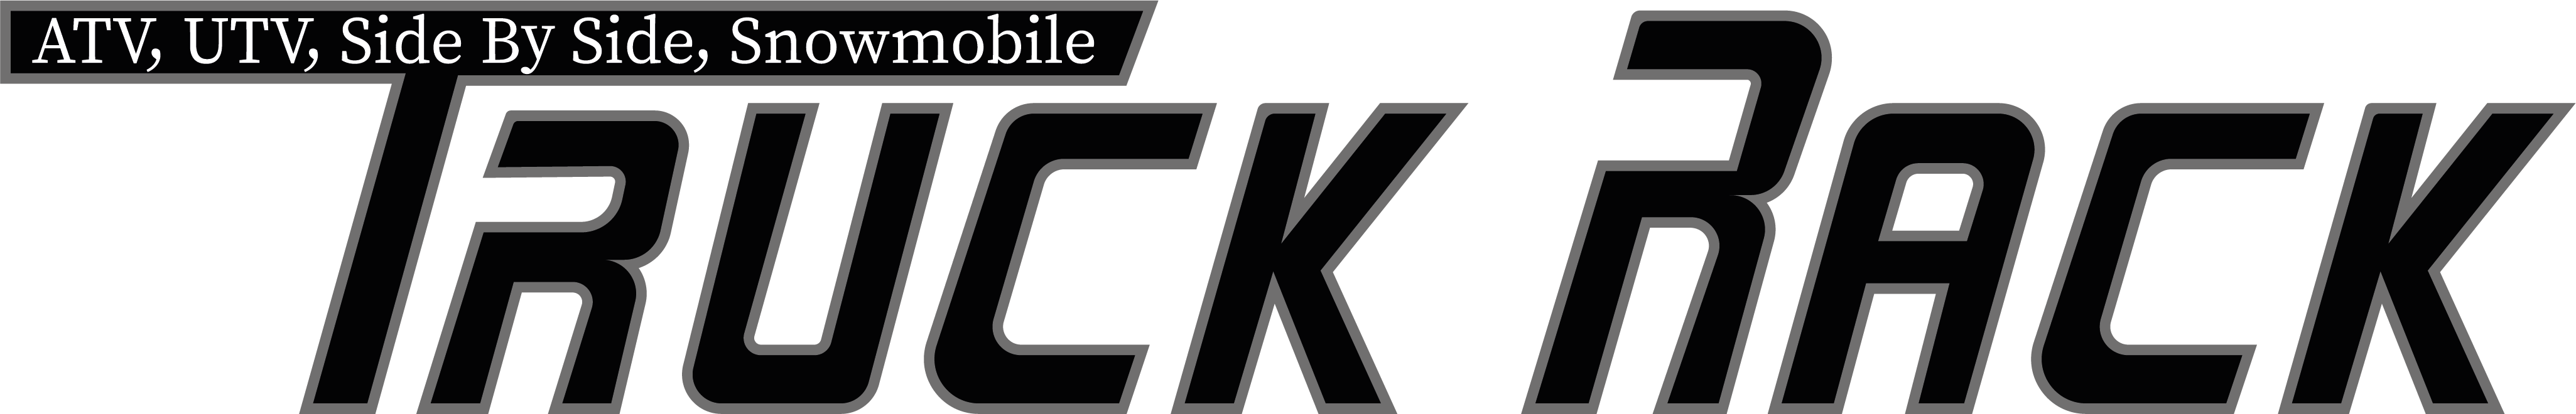 Truck rack logo